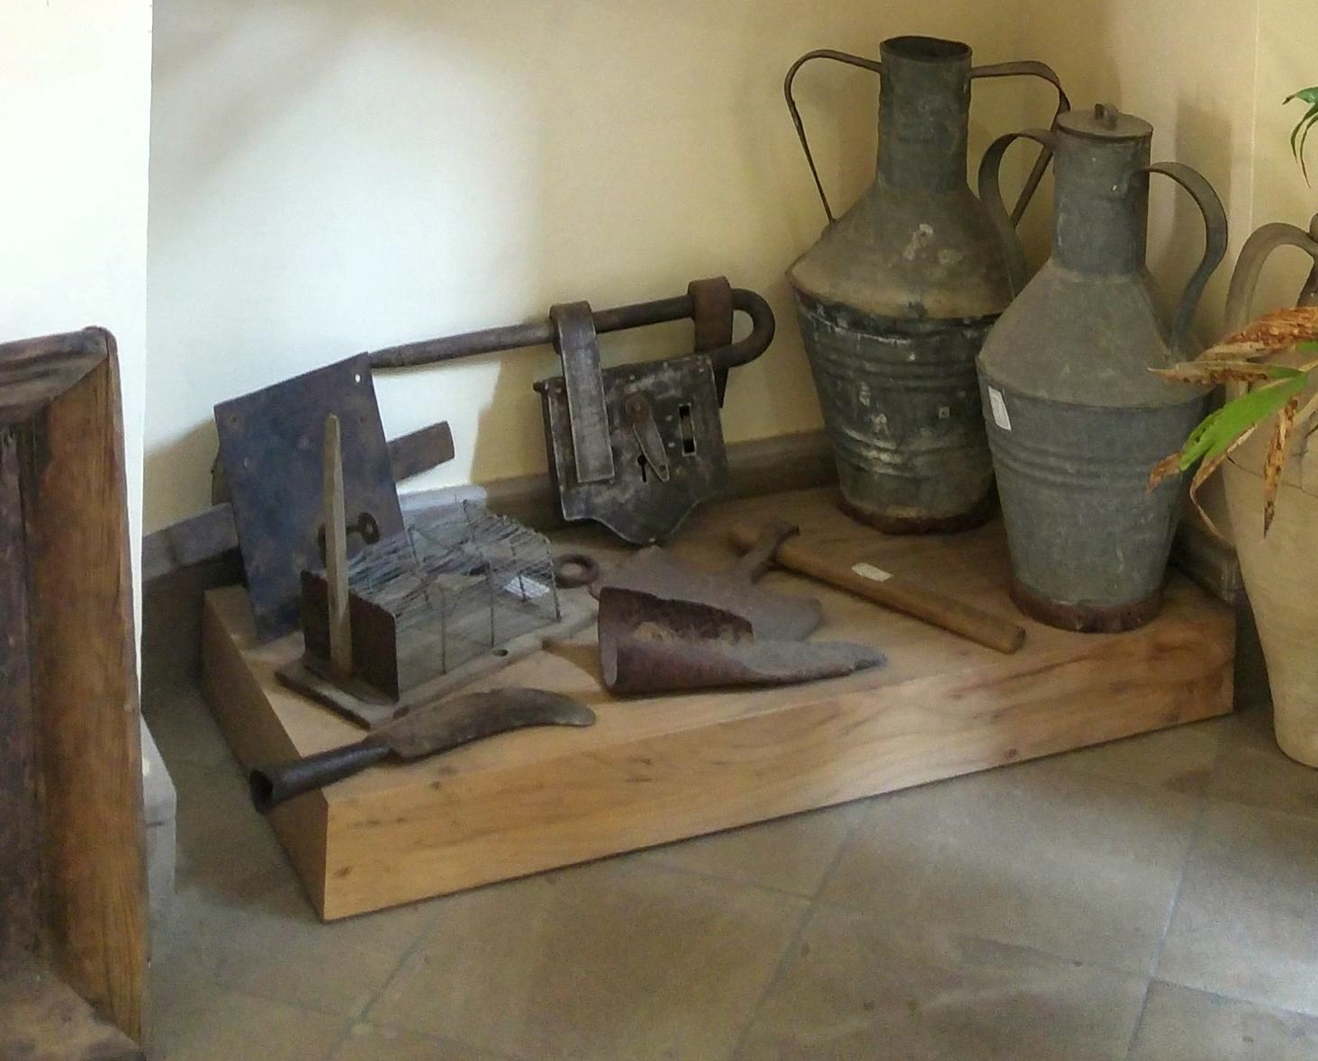 Museo del Maná - Mannaruolo y otros utensilios del 'ntaccaluoru